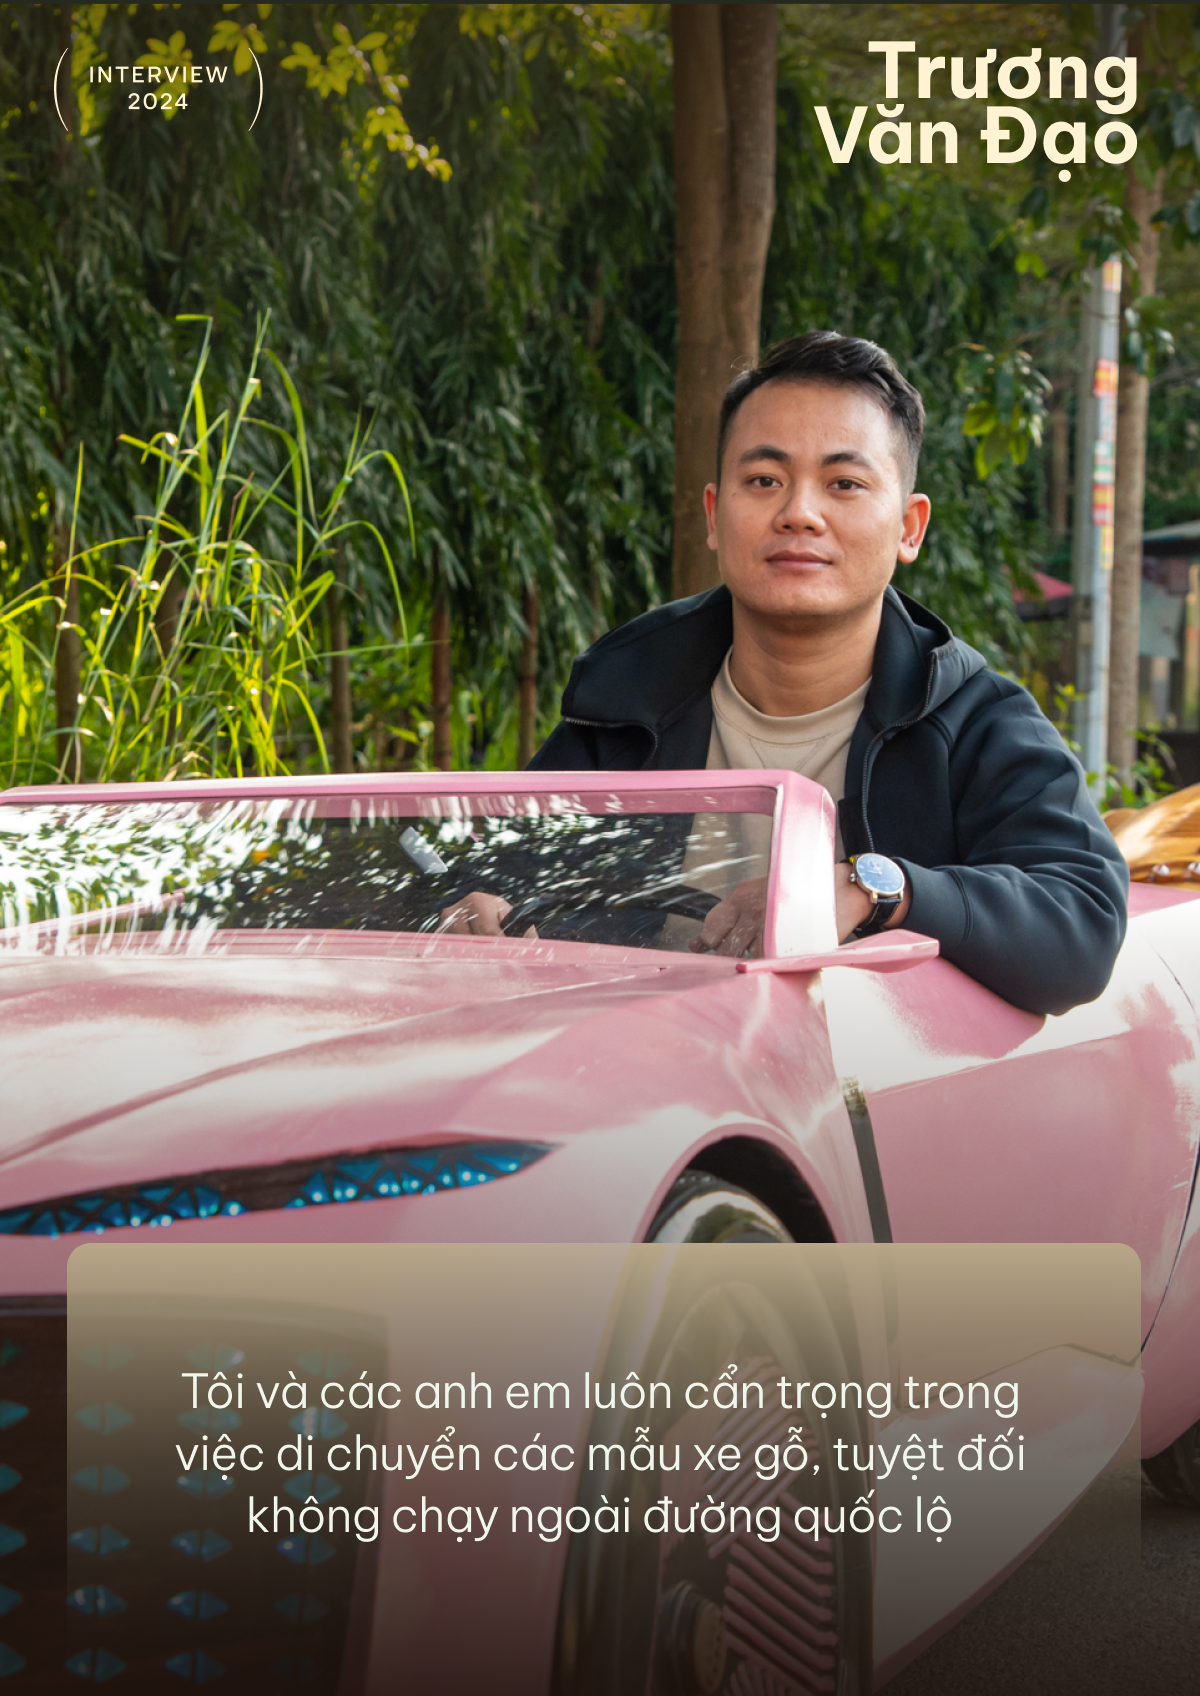 Ông bố làm xe gỗ Trương Văn Đạo: ‘Sắp tự thiết kế xe, dùng cả AI’ - Ảnh 6.